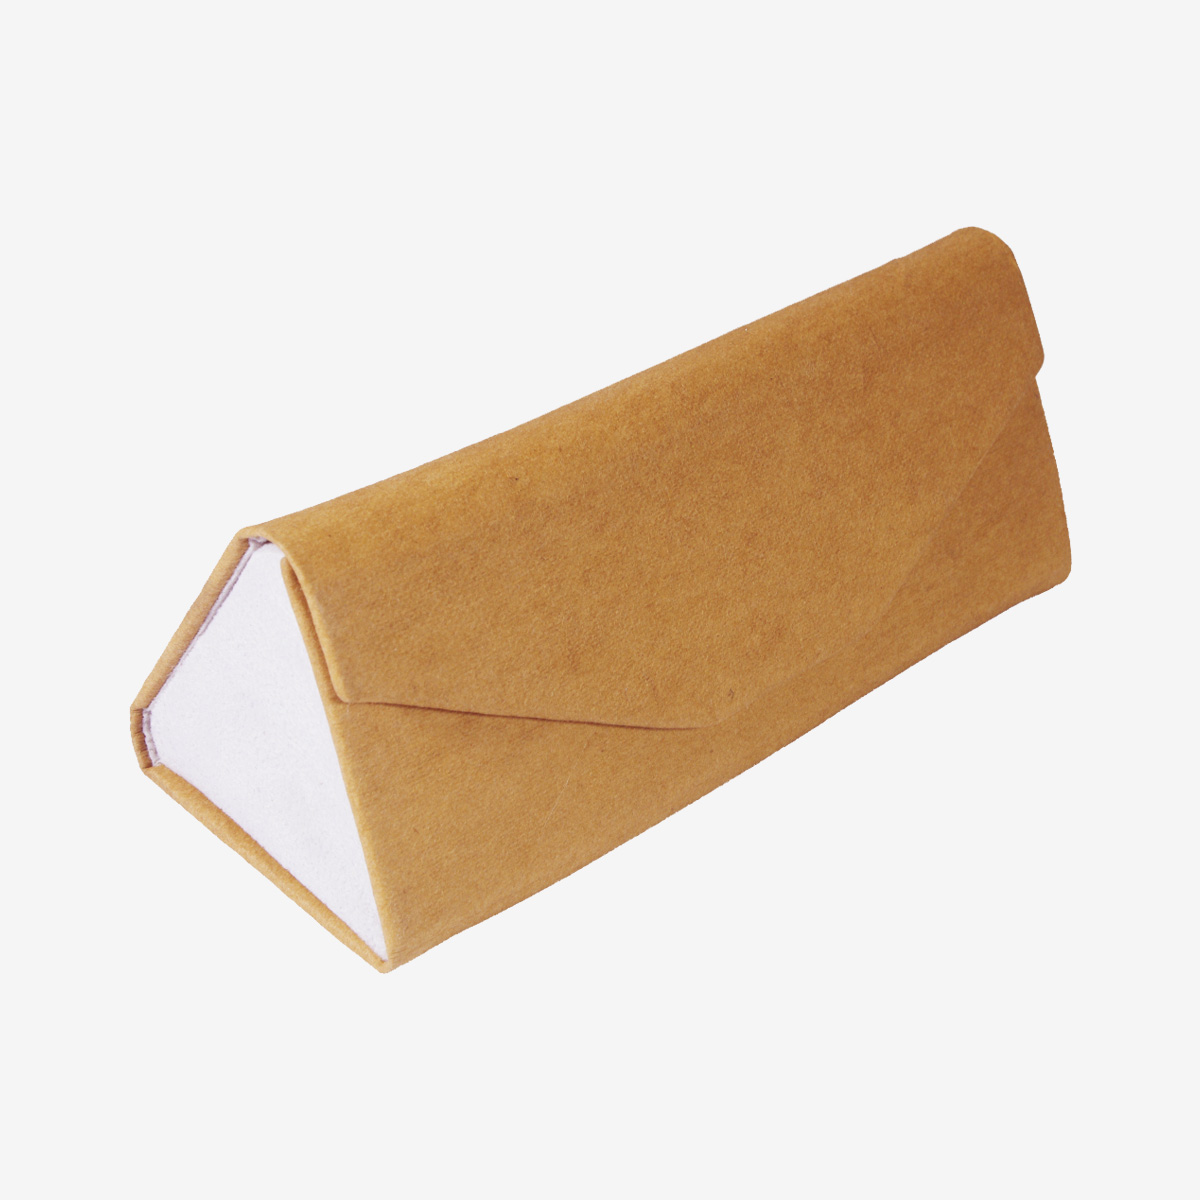 Carton Fold Box